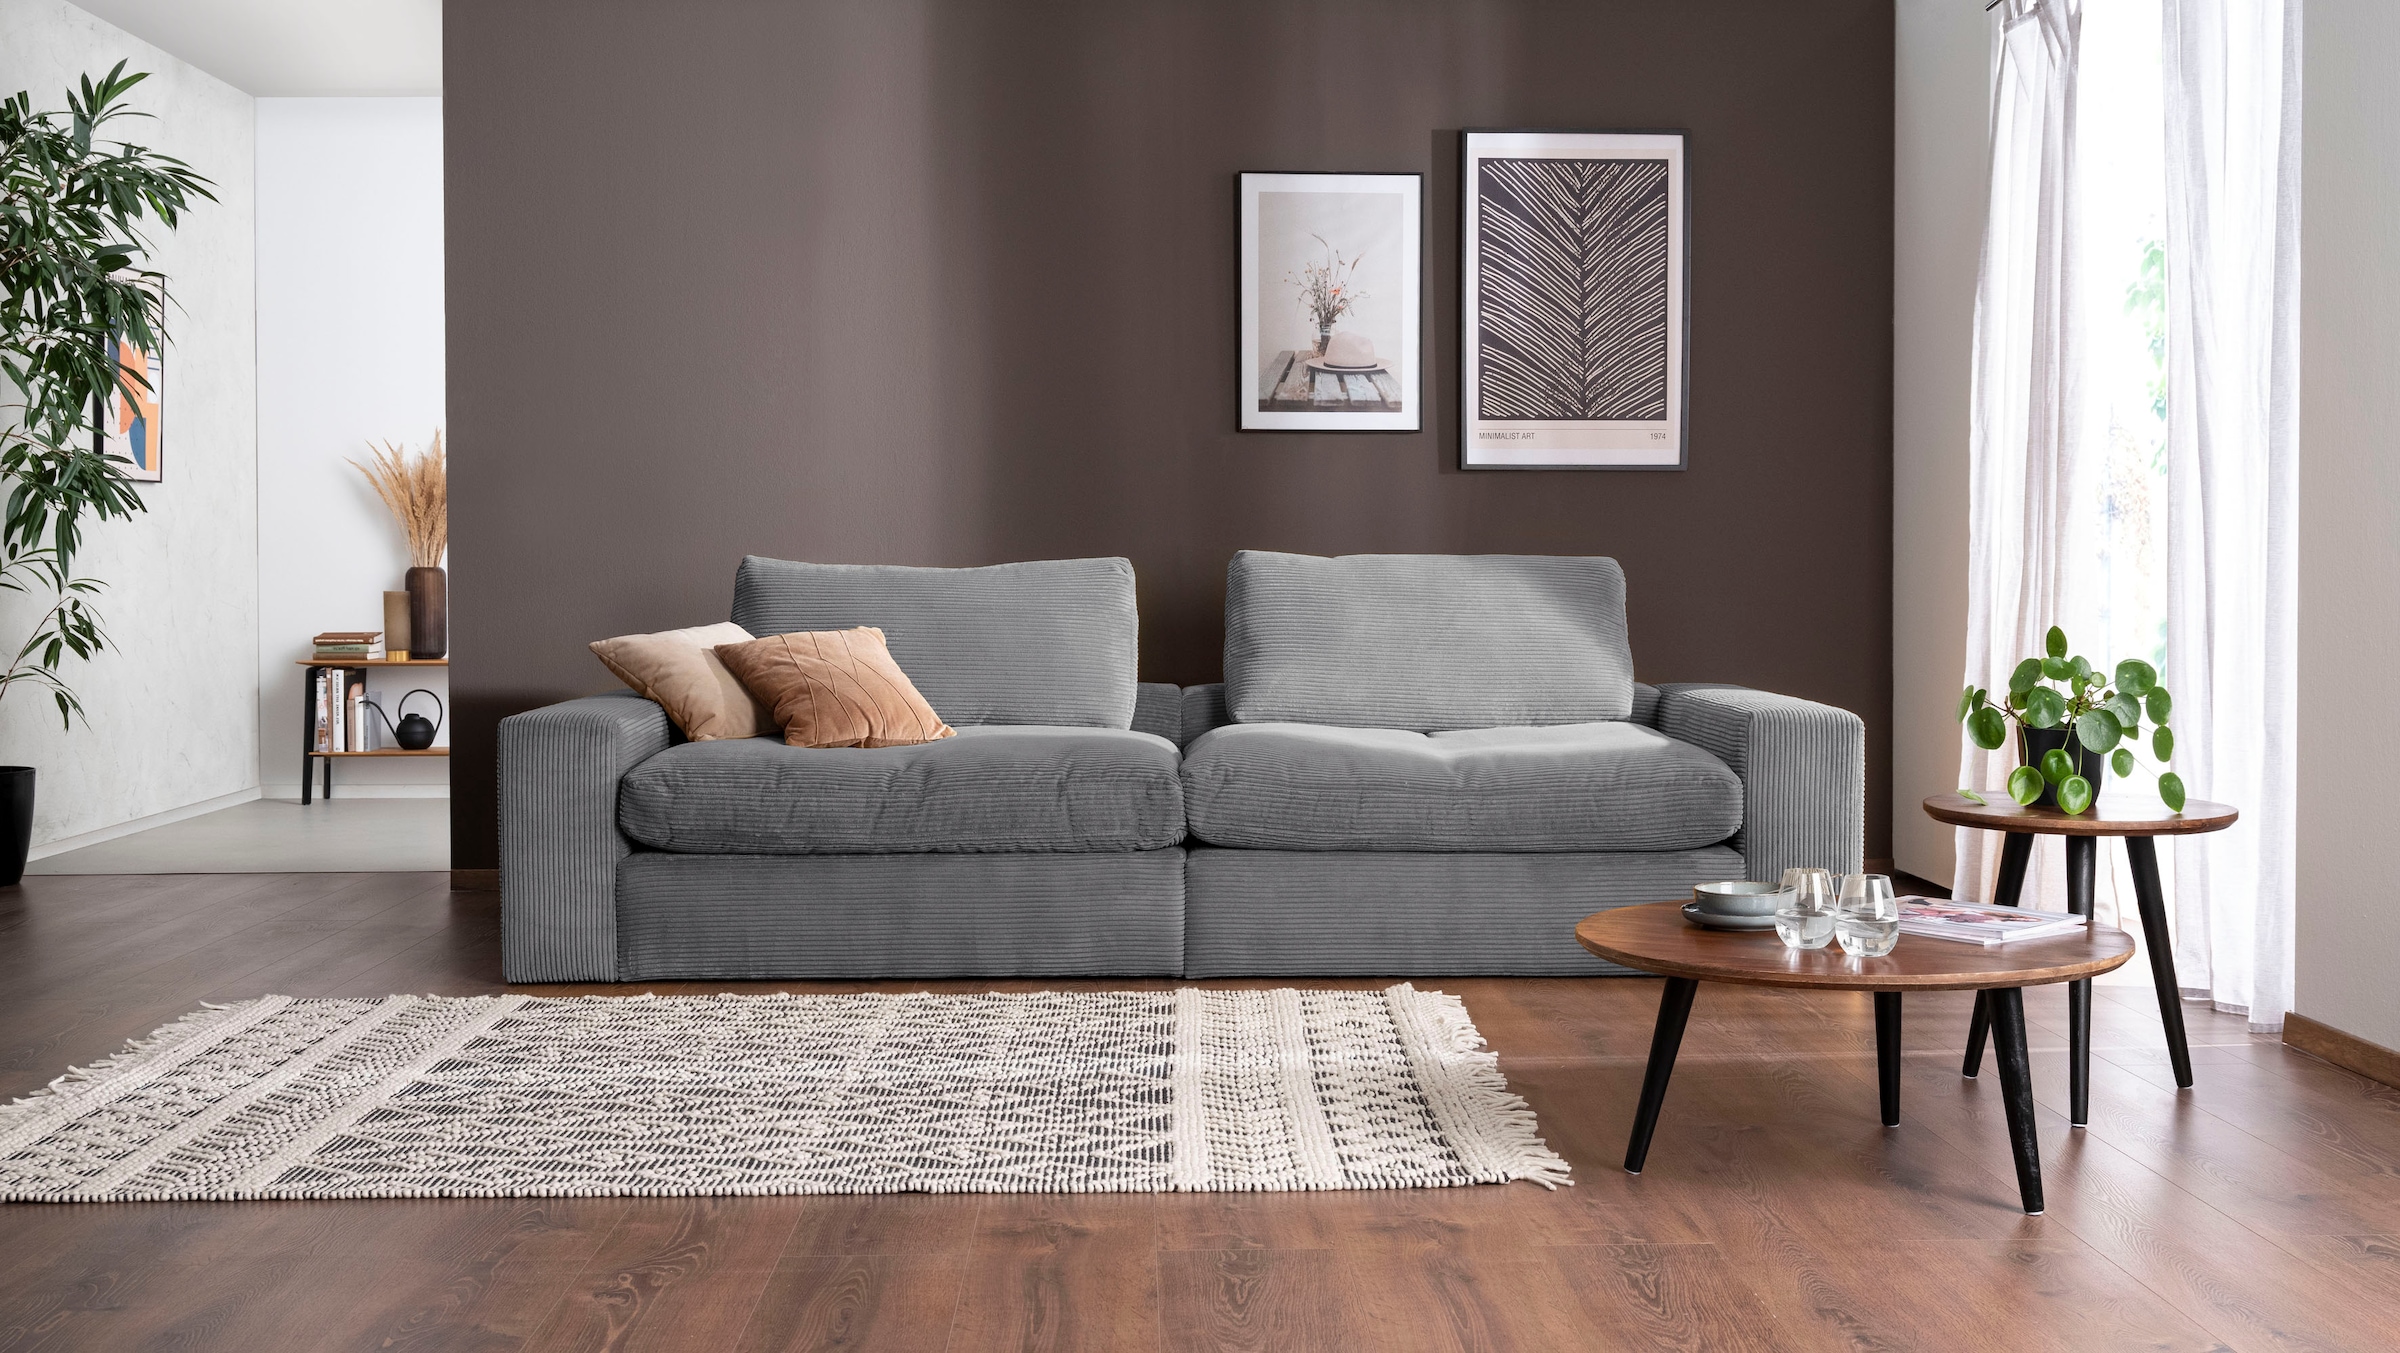 Big-Sofa »Sandy«, 266 cm breit und 98 cm tief, in modernem Cordstoff